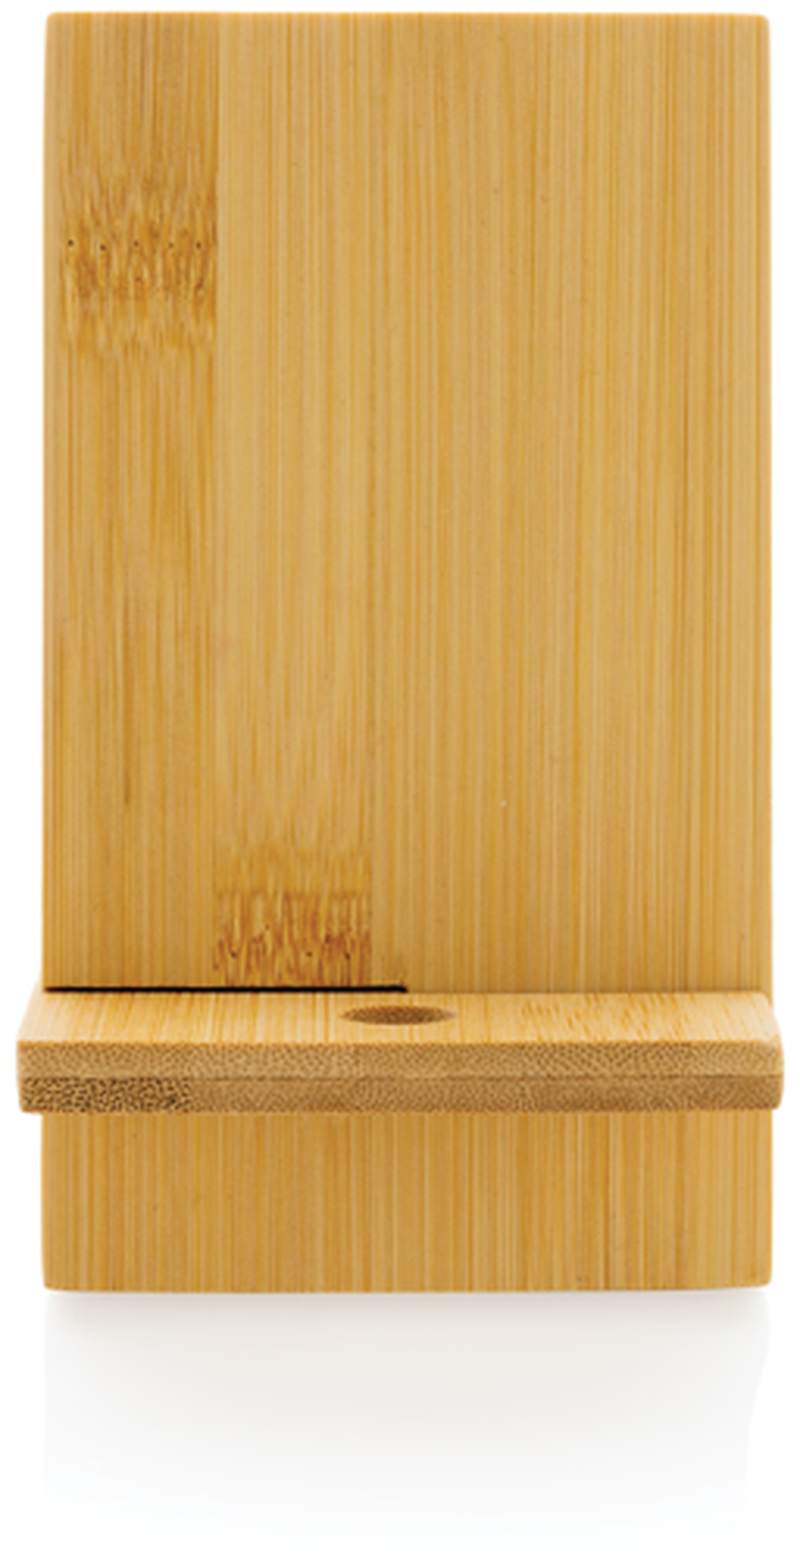 Stojánek na telefon z FSC bambusu v FSC krabičce